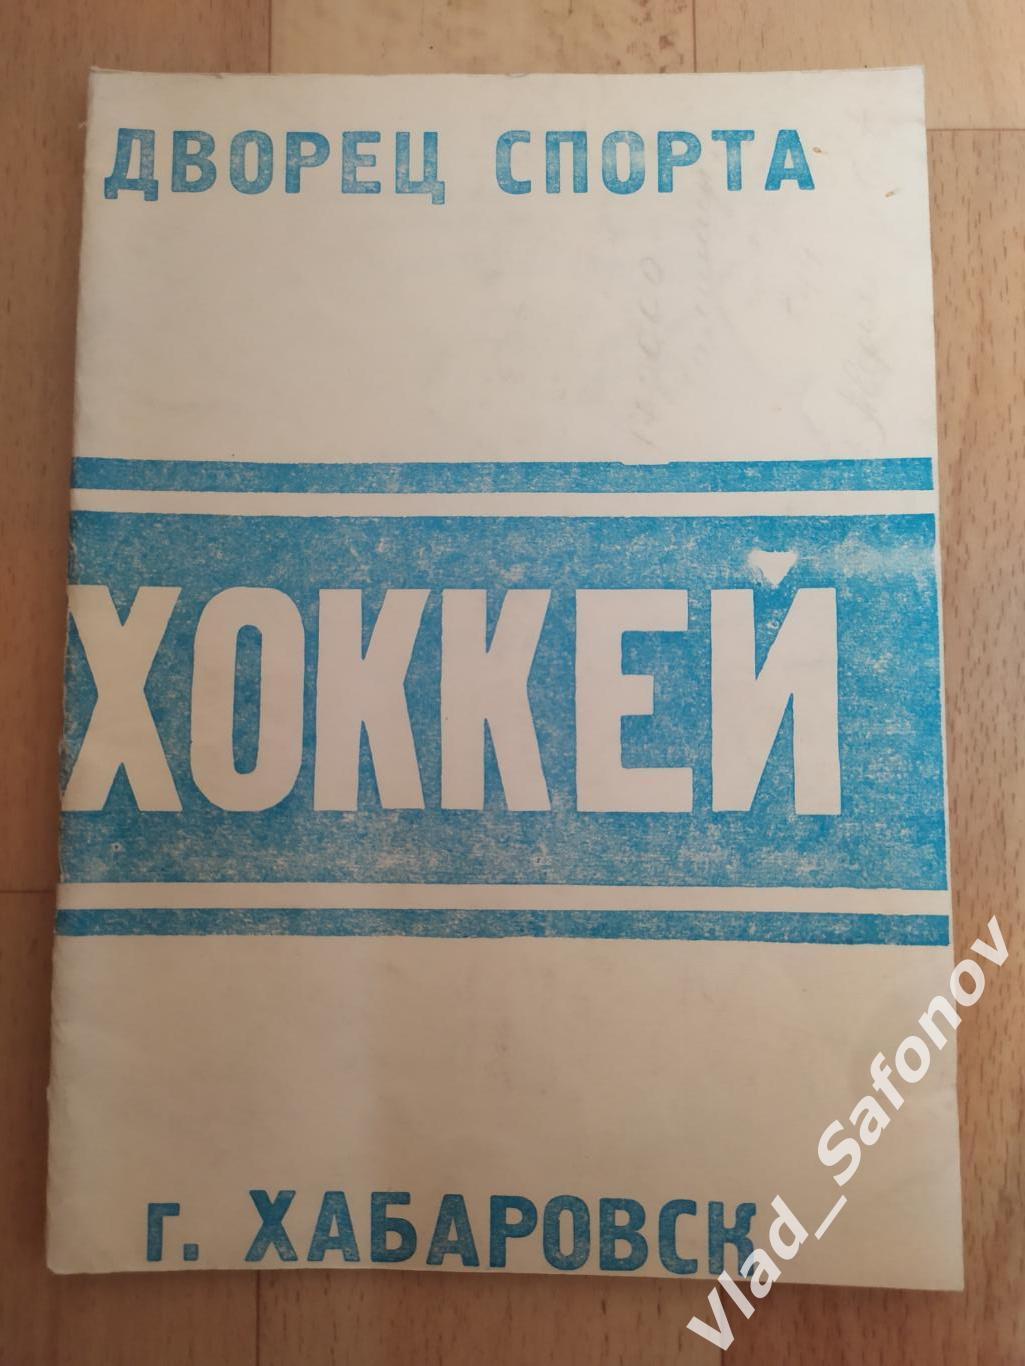 Календарь справочник. Хоккей. Хабаровск 1988.